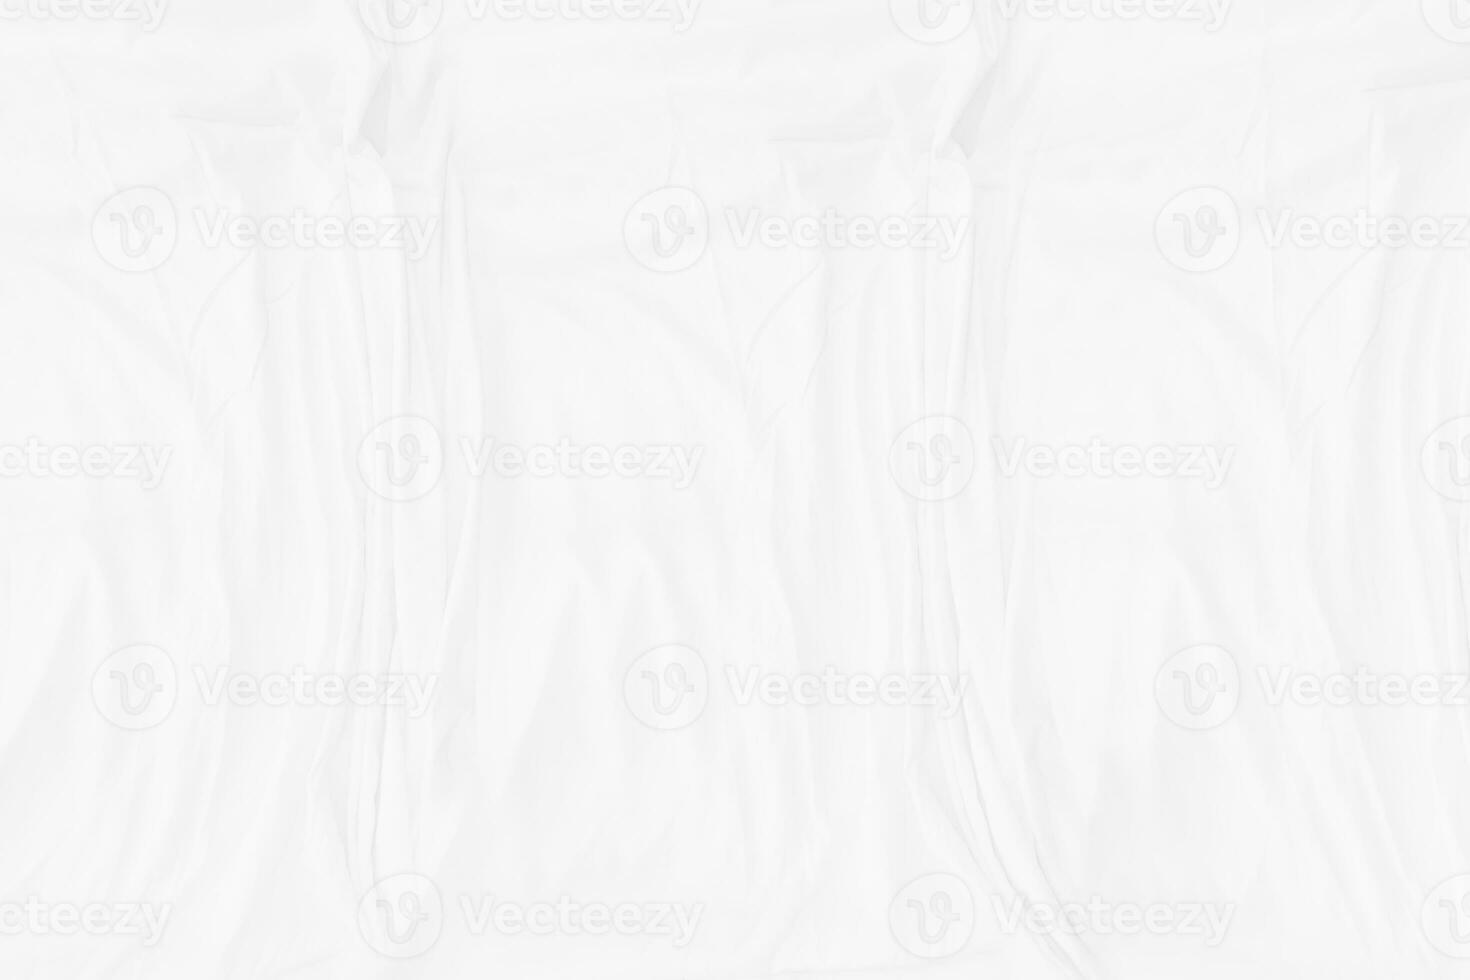 top visie abstract wit kleding achtergrond met zacht golven.golf en kromme overlappende met verschillend schaduw van kleur wit kleding stof, verfrommeld kleding stof. foto